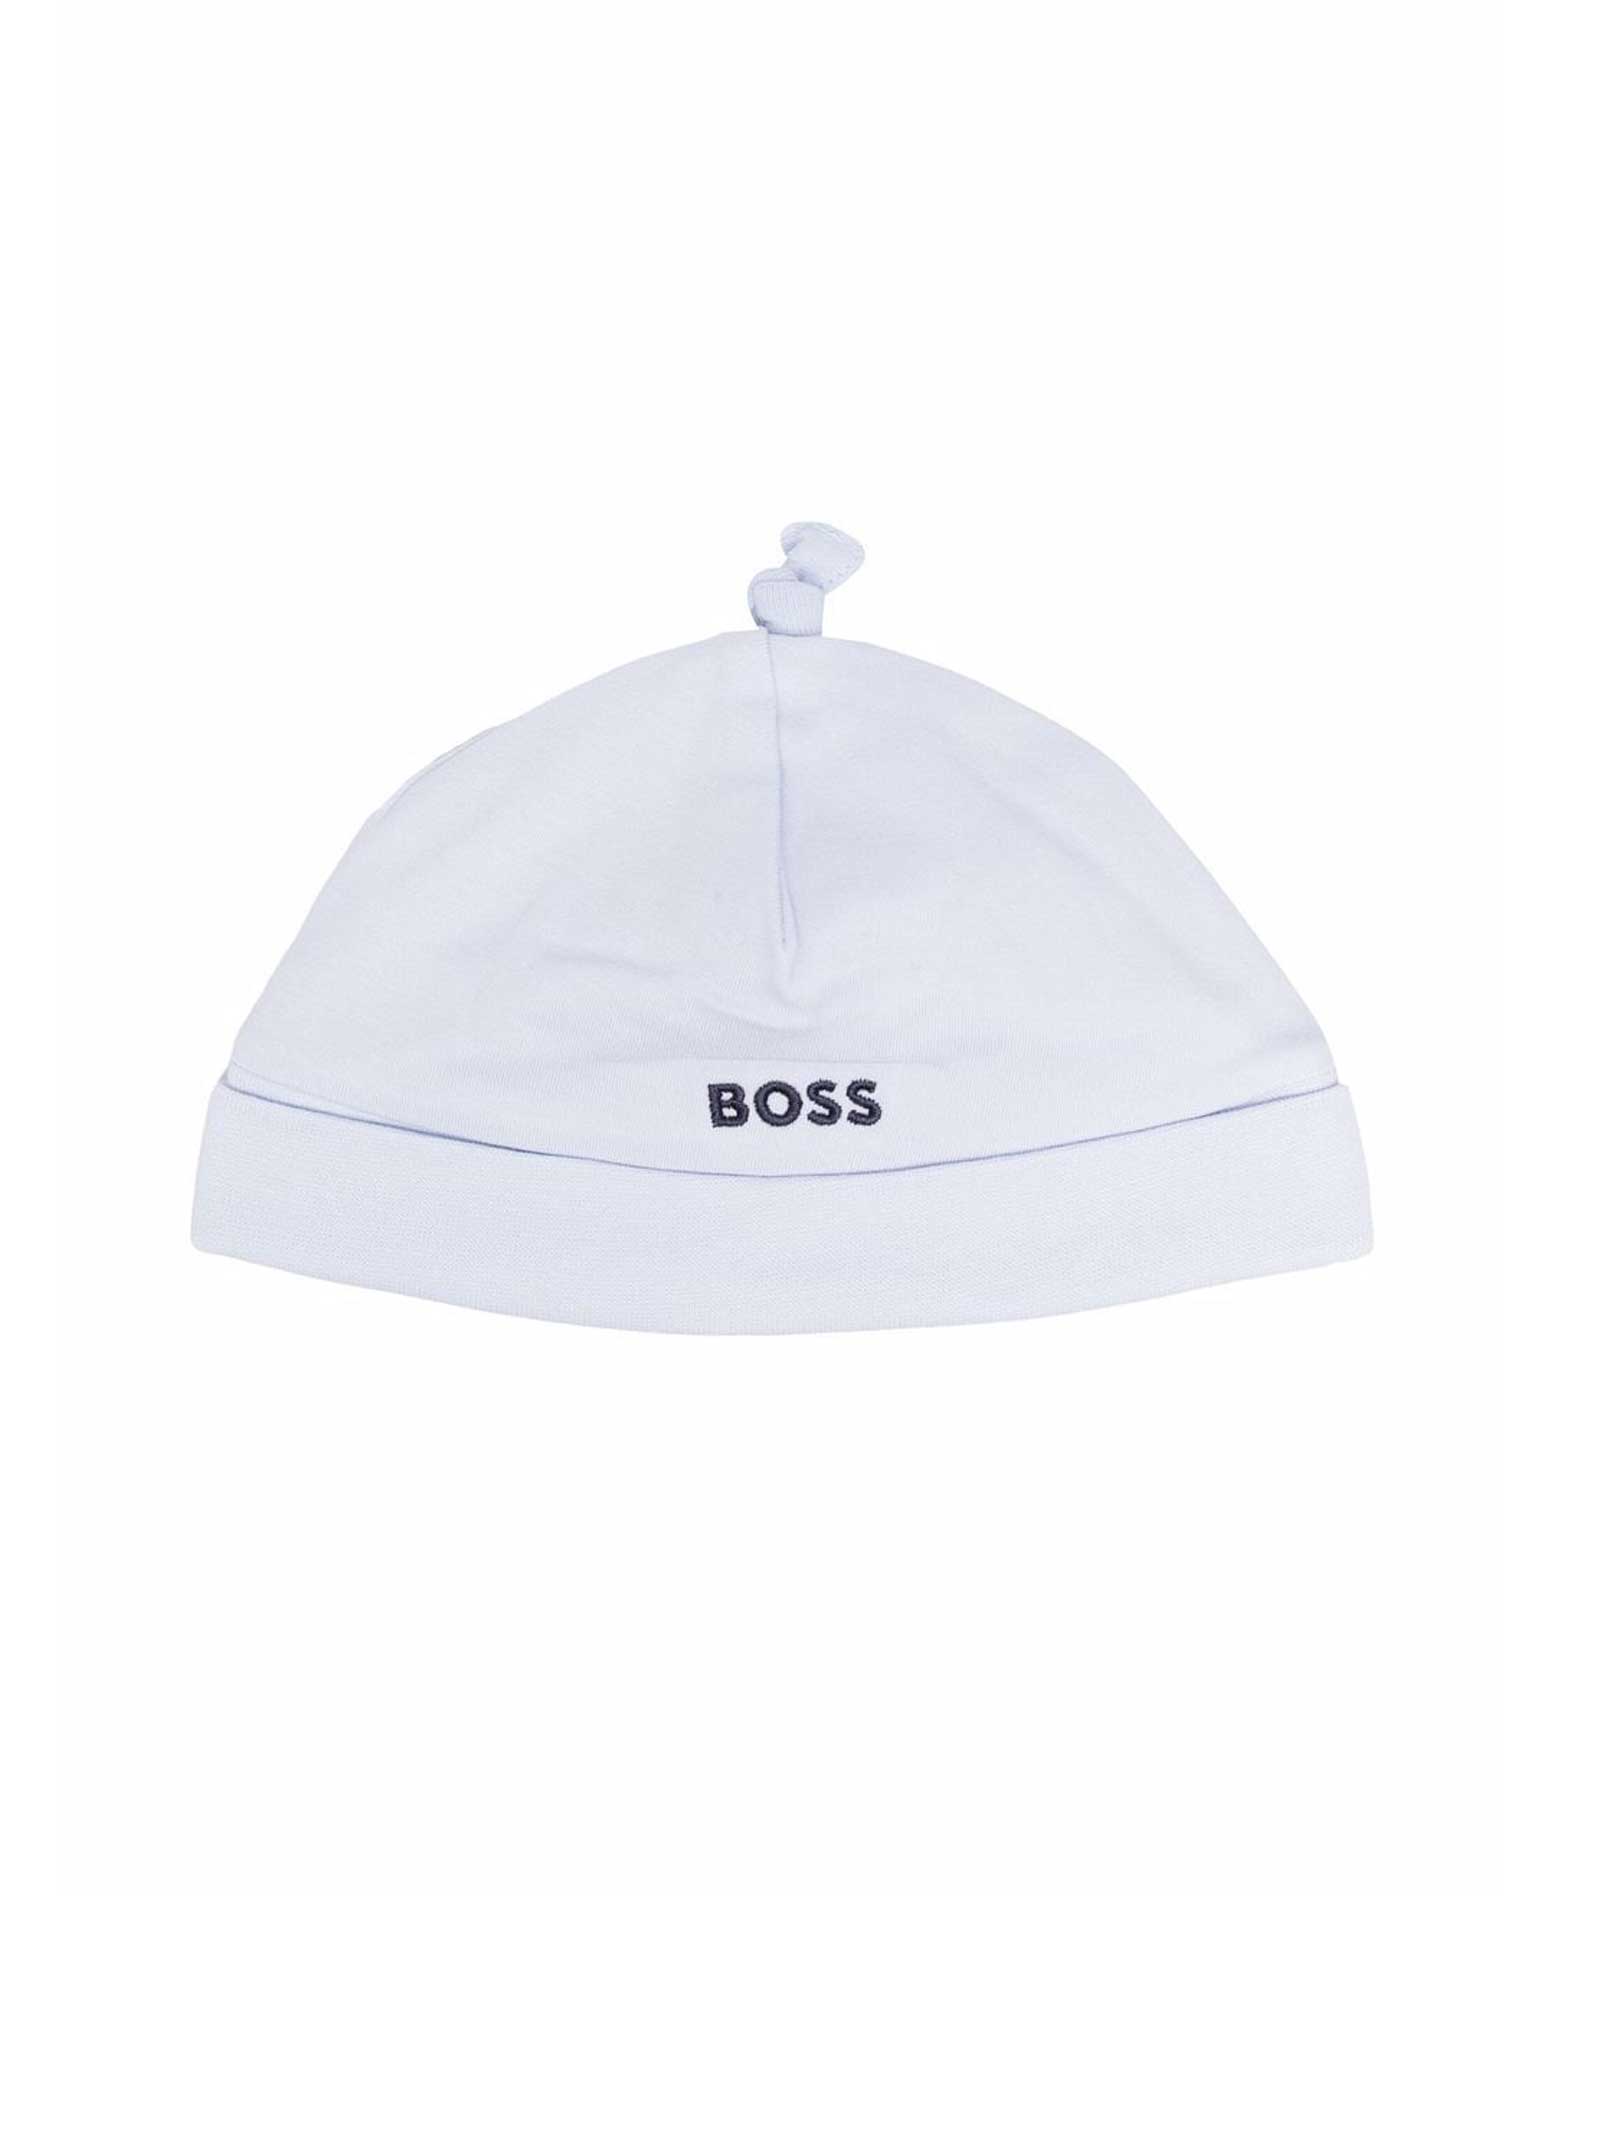 Hugo Boss White Hat With Black Logo